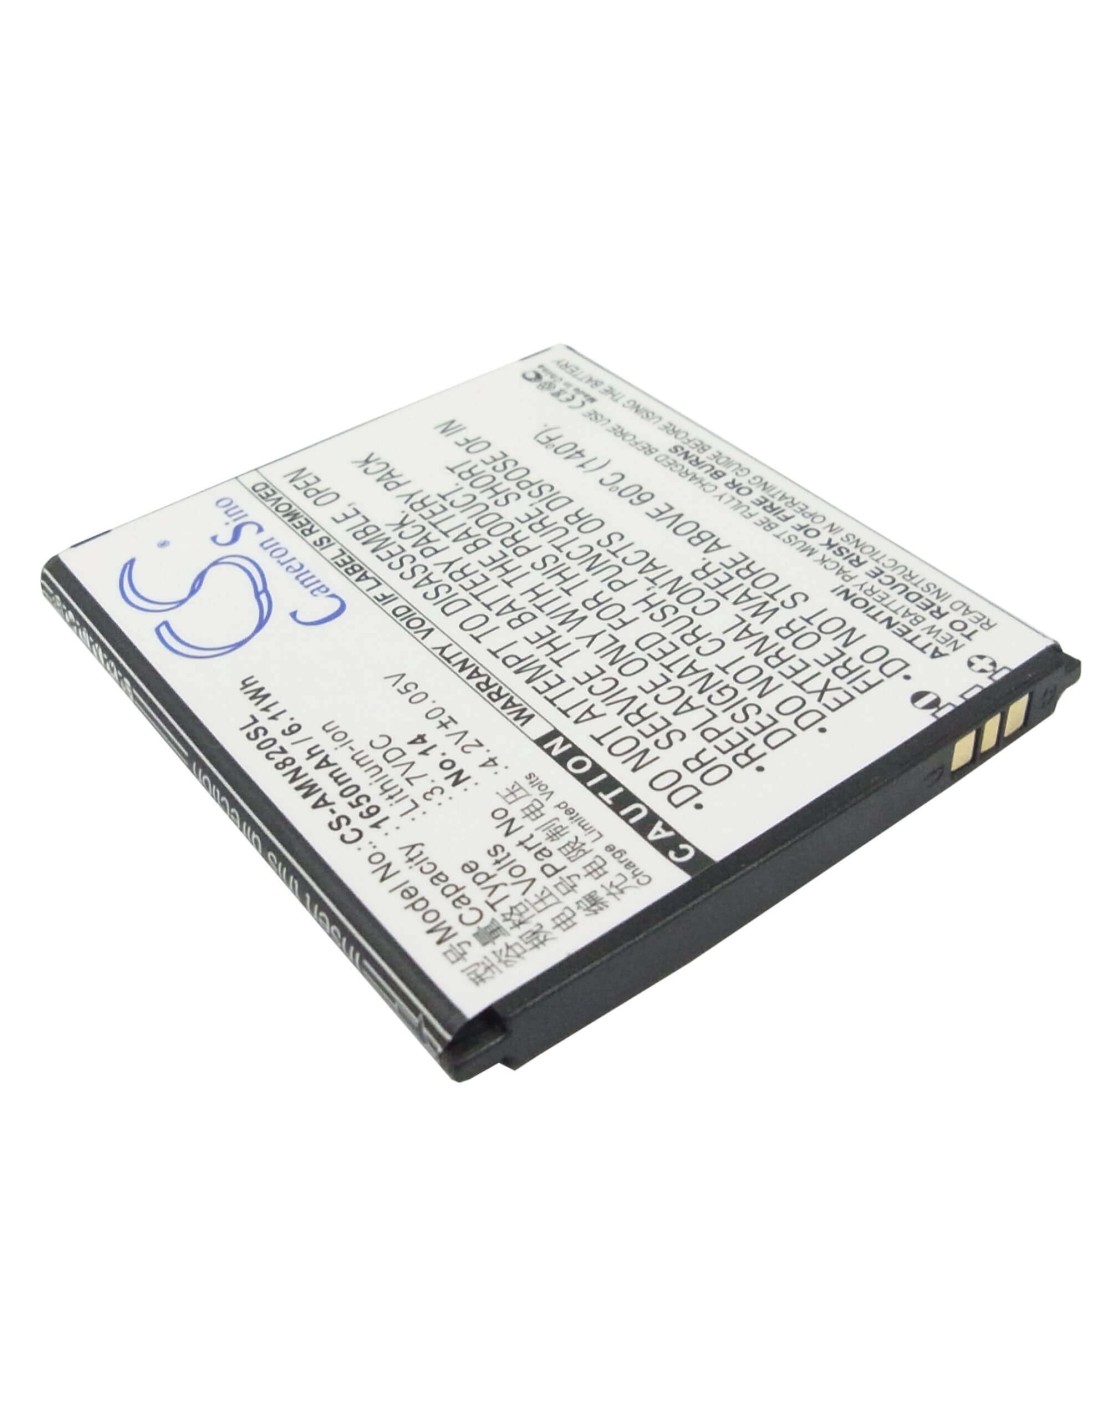 Battery for AMOI N820, N821, N828 3.7V, 1650mAh - 6.11Wh